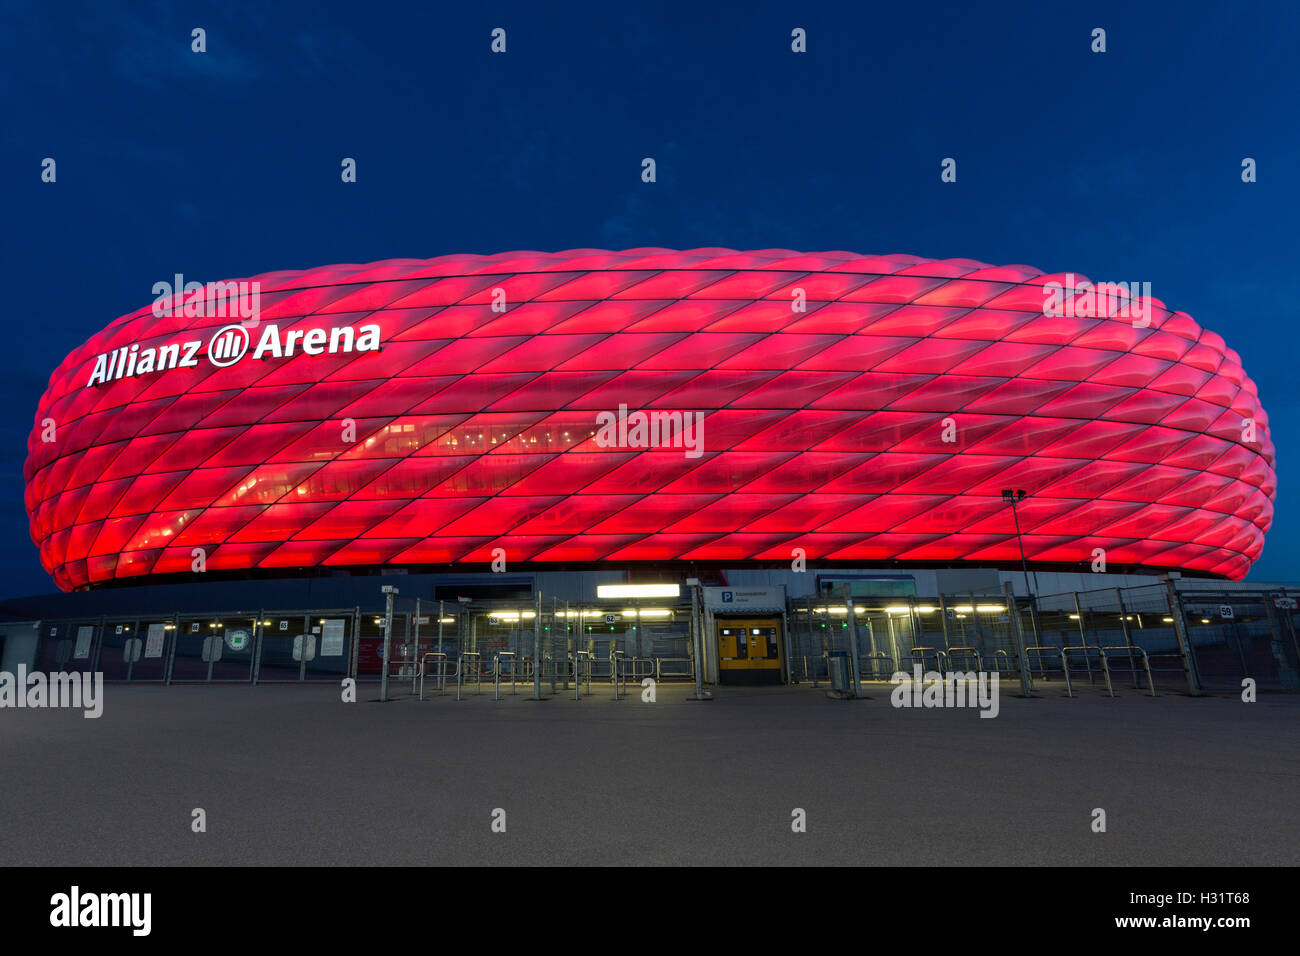 L Allianz Arena Un Stade De Football De Munich Baviere Allemagne Avec Une Capacite D Accueil 75 000 Terrain Pour Deux Professio Photo Stock Alamy